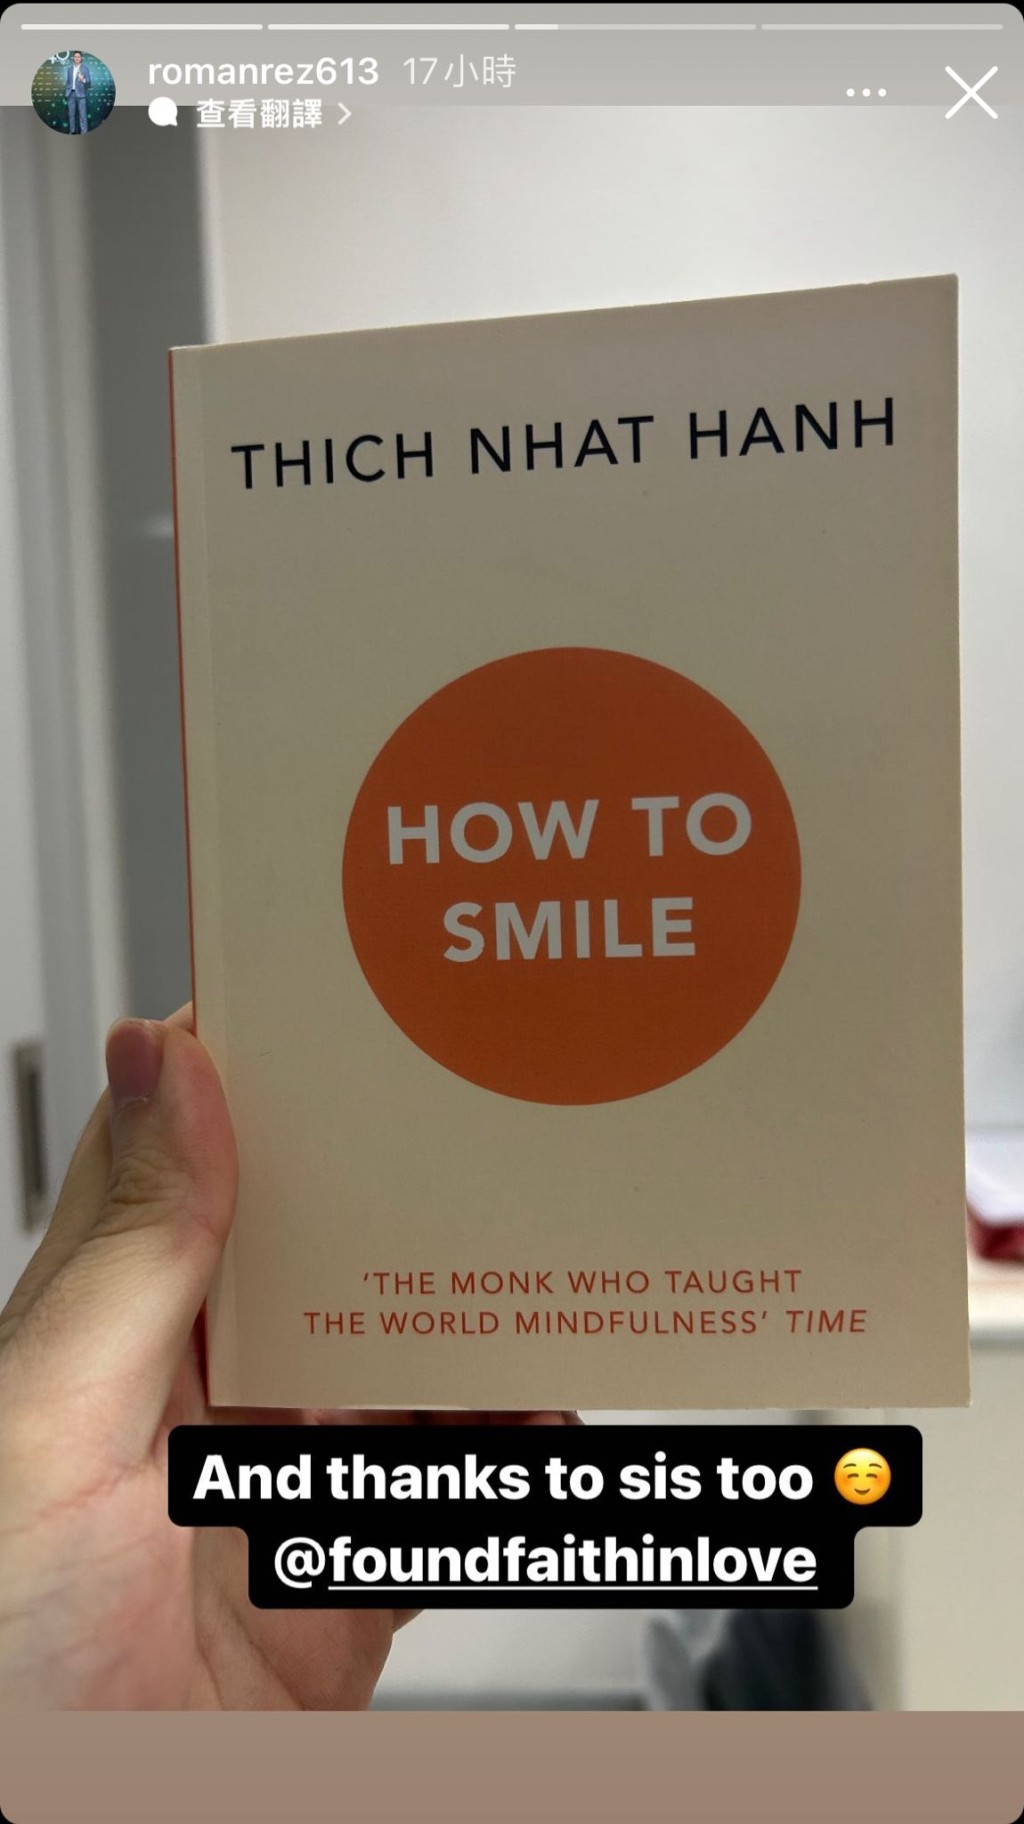 趙式正感激家姐趙式芝的好書分享，可見趙式芝推薦的是一行禪師（Thich Nhat Hanh）的作品《How to Smile》，對同父異母的細佬趙式正盡顯關懷。